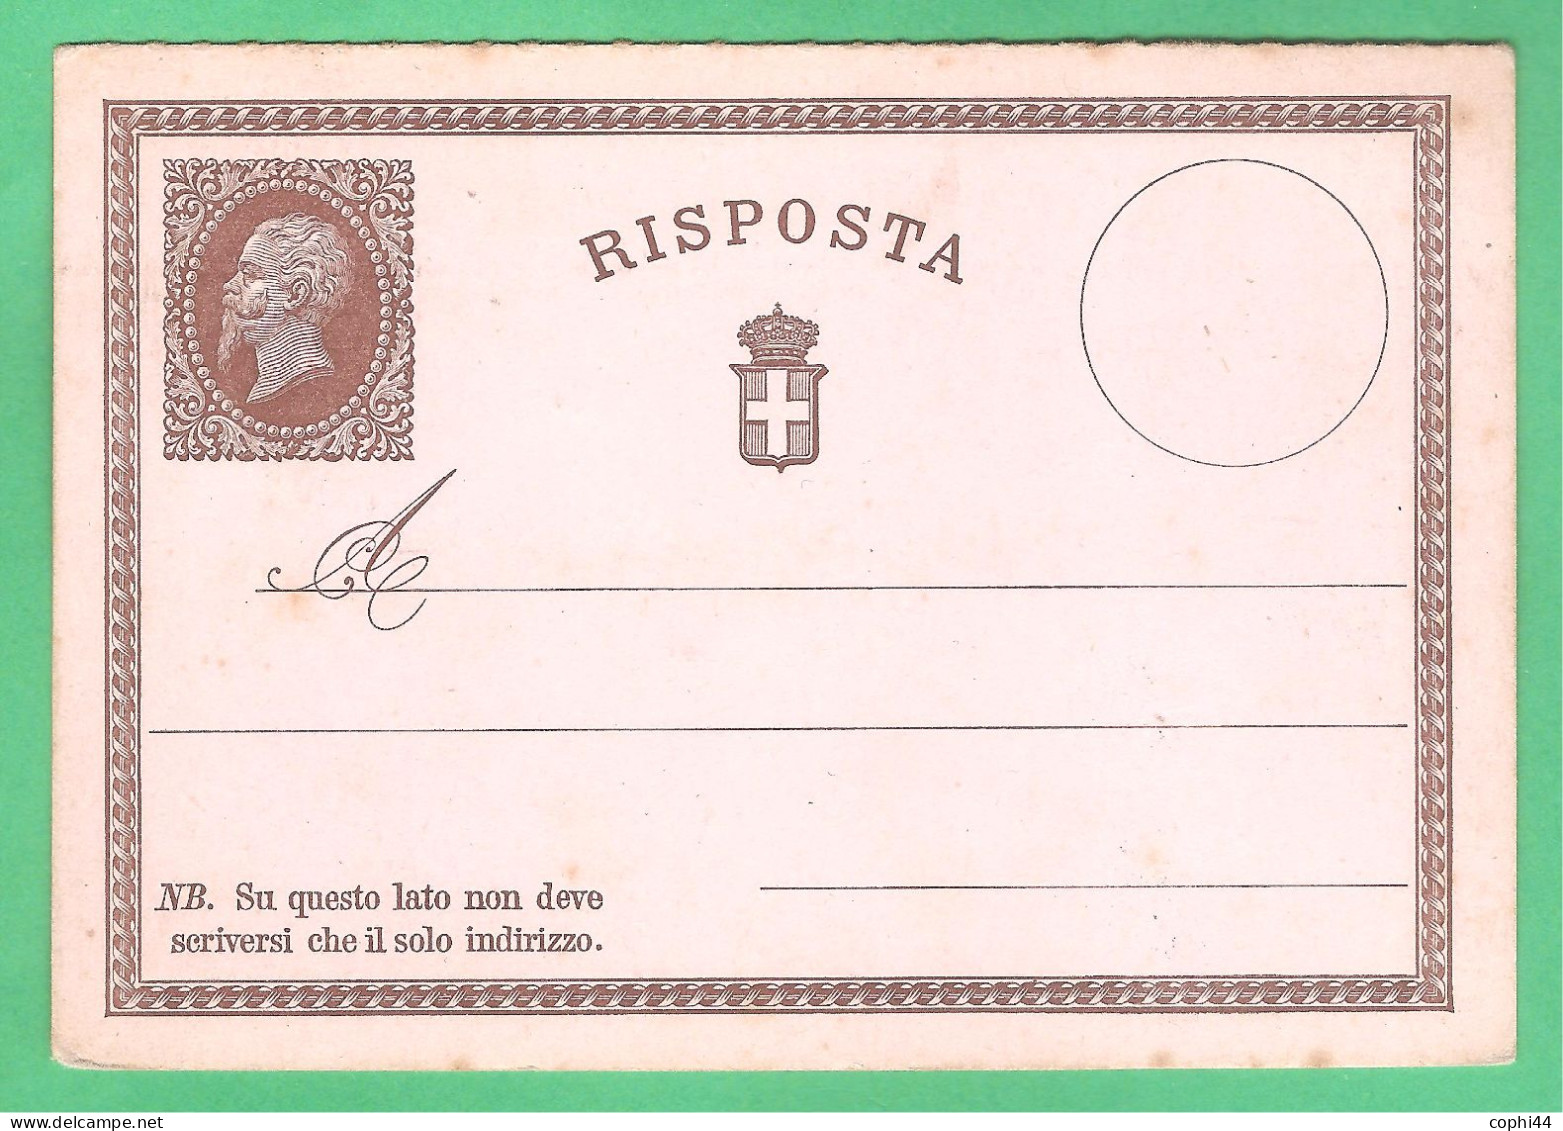 REGNO D'ITALIA 1874 VEII CARTOLINA POSTALE N. 2 C.15+R NUOVA SOLO RISPOSTA SENZA DOMANDA BUONE CONDIZIONI - Ganzsachen